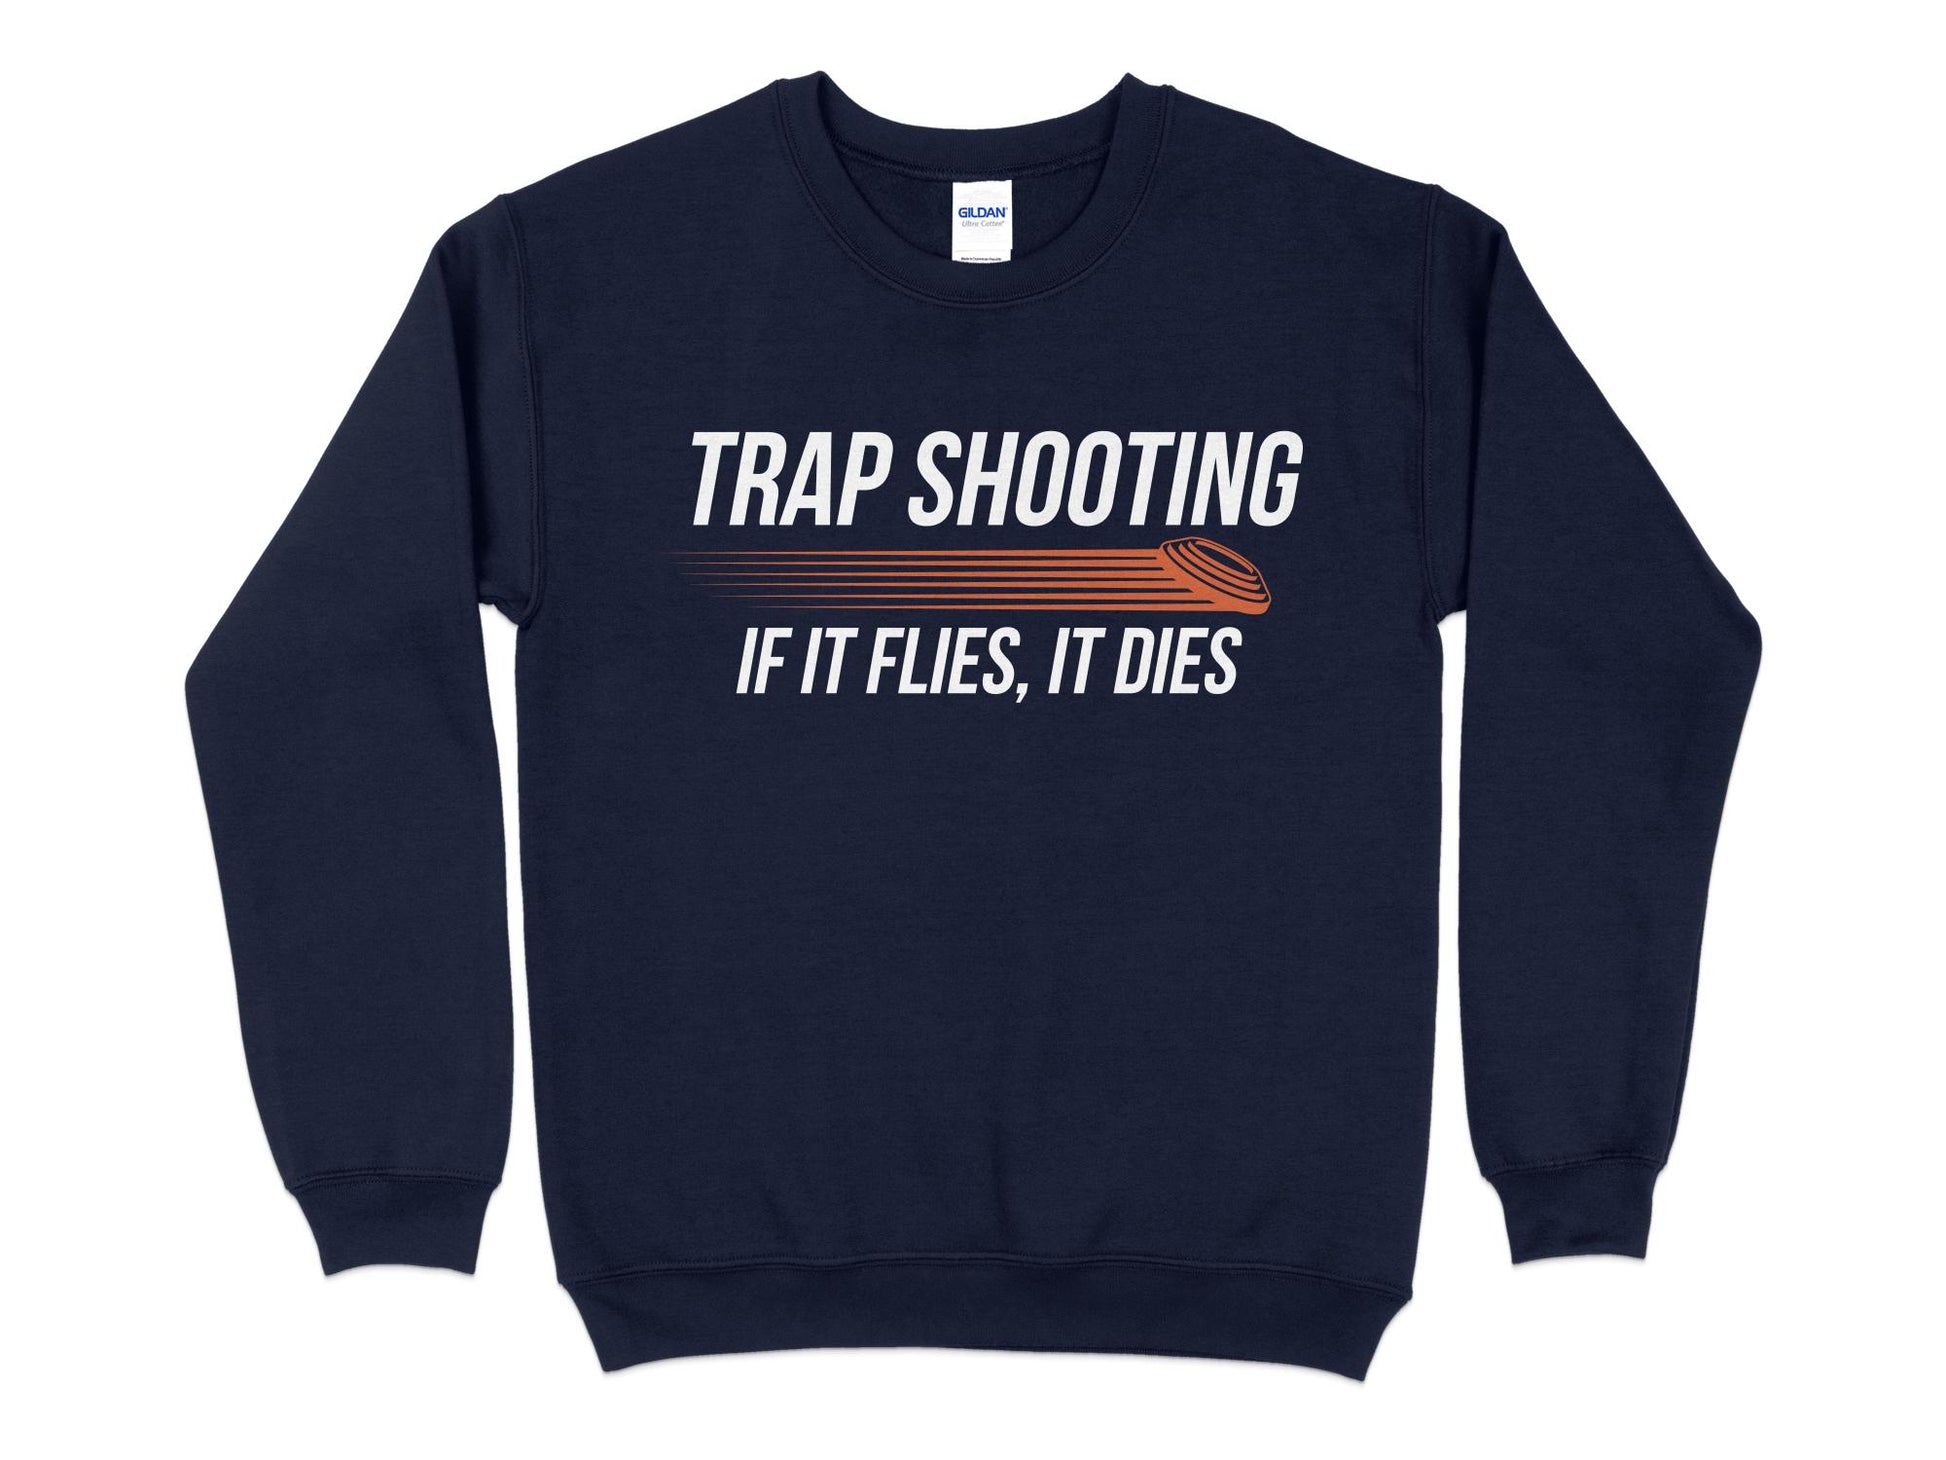 Trap Shooting Sweatshirt, If It Flies It Dies, navy blue